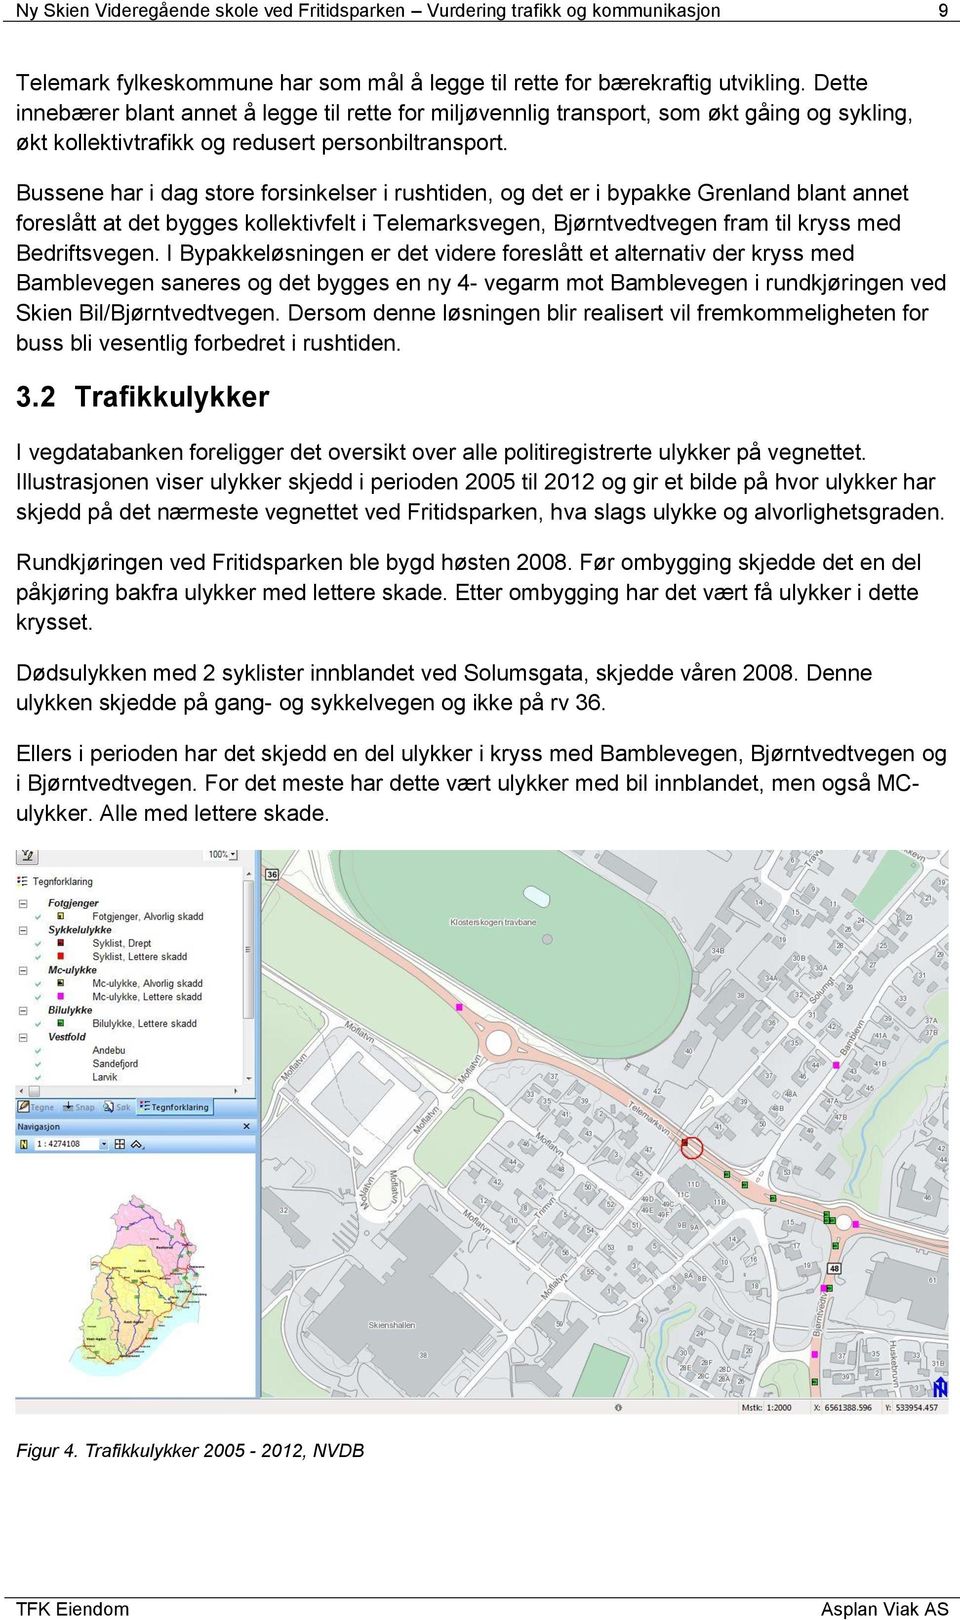 Bussene har i dag store forsinkelser i rushtiden, og det er i bypakke Grenland blant annet foreslått at det bygges kollektivfelt i Telemarksvegen, Bjørntvedtvegen fram til kryss med Bedriftsvegen.